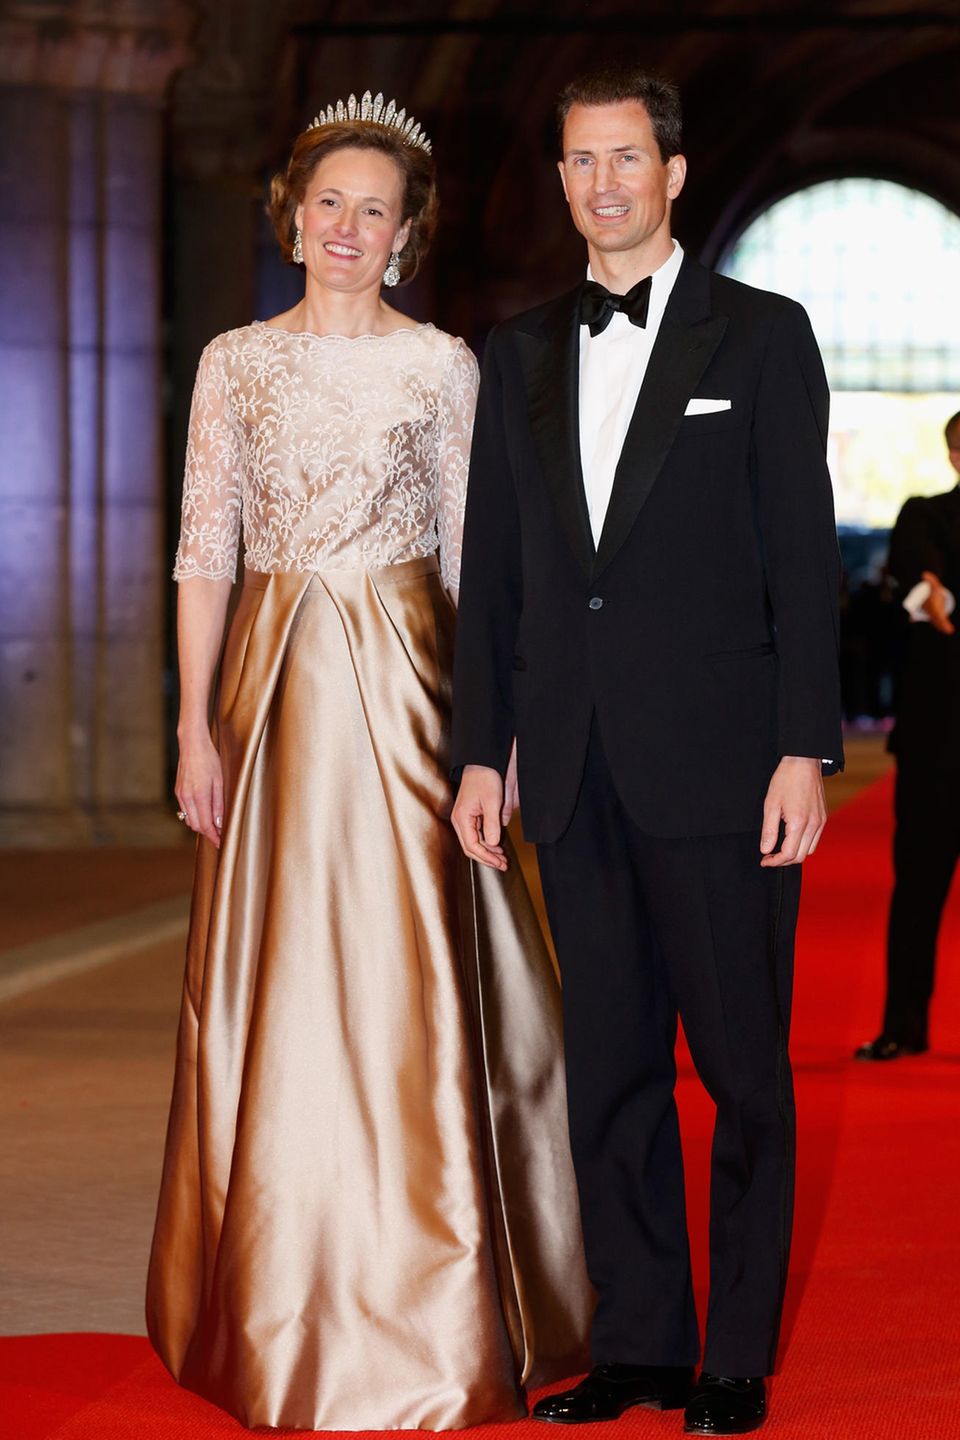 Princess Sophie of Liechtenstein and Prince Alois von und zu Liechtenstein